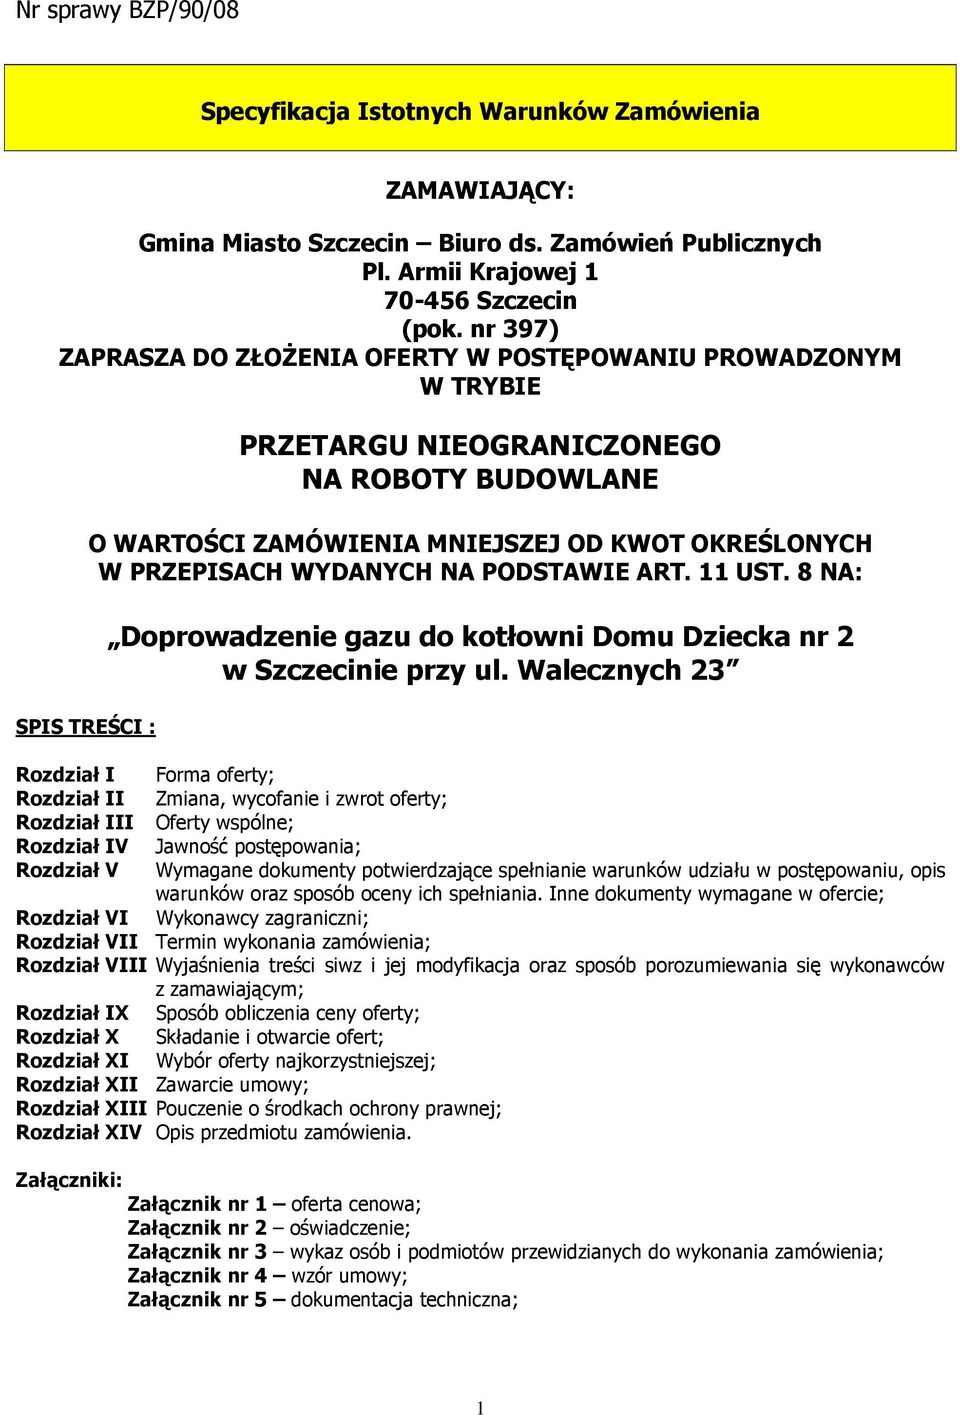 WYDANYCH NA PODSTAWIE ART. 11 UST. 8 NA: Doprowadzenie gazu do kotłowni Domu Dziecka nr 2 w Szczecinie przy ul.